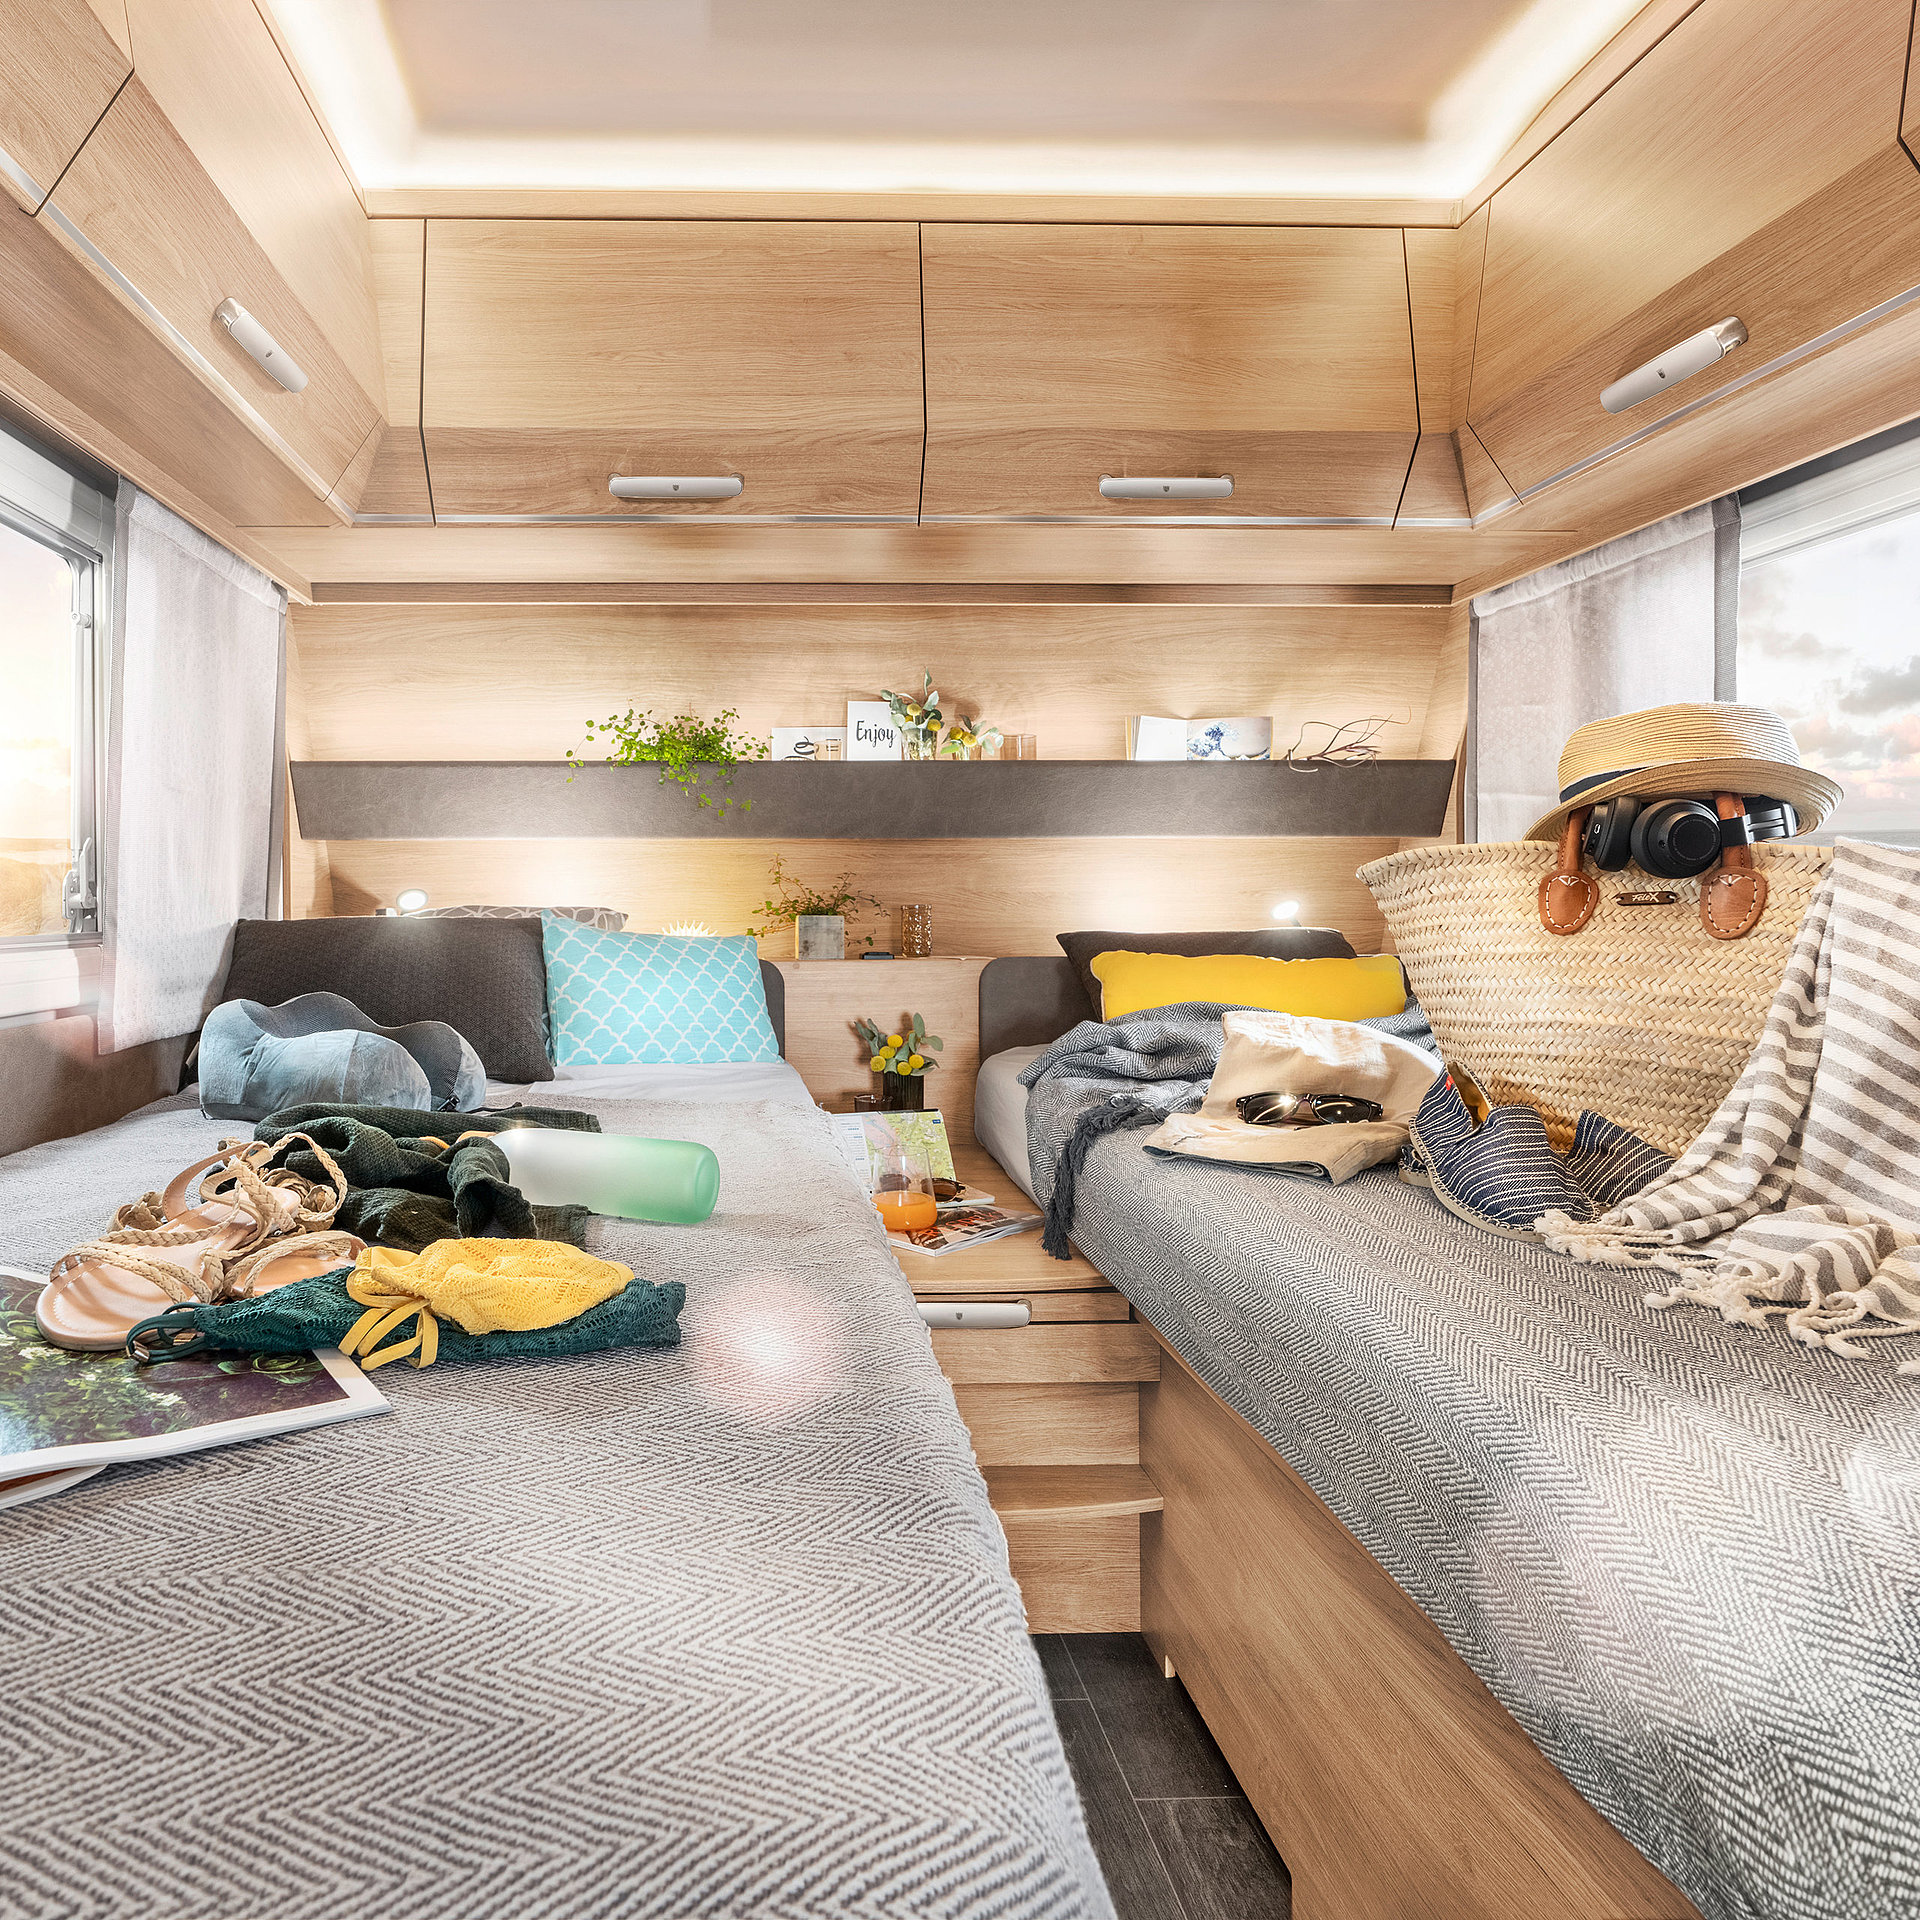 Wohnwagen-Sondermodell TABBERT DA VINCI IC-LINE 2022 bei Ihrem InterCaravaning Fachhändler kaufen